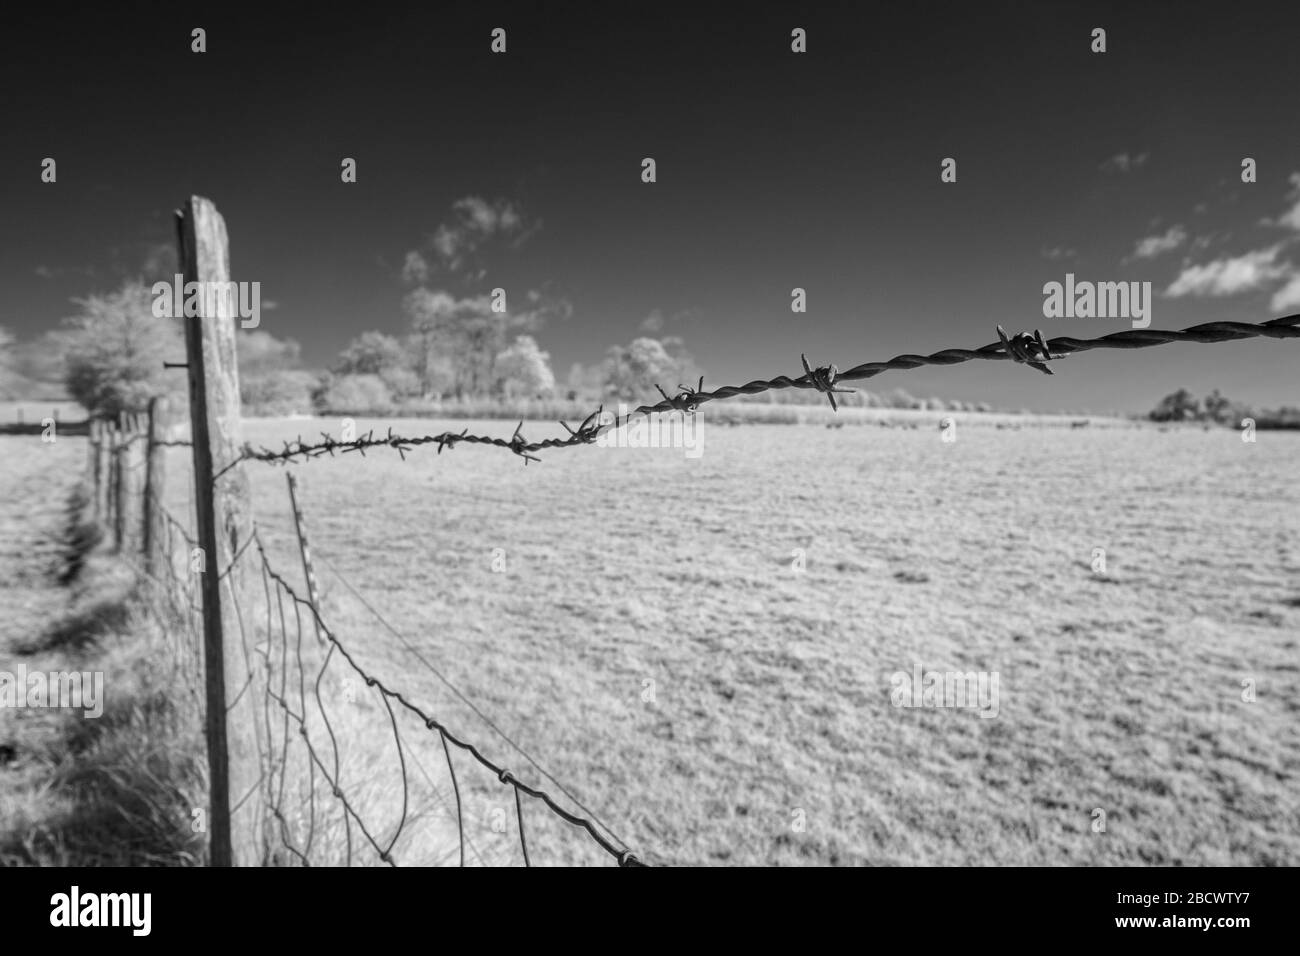 Un recinto di filo spinato intorno ad un campo. Immagine a infrarossi (720 nm), Regno Unito Foto Stock